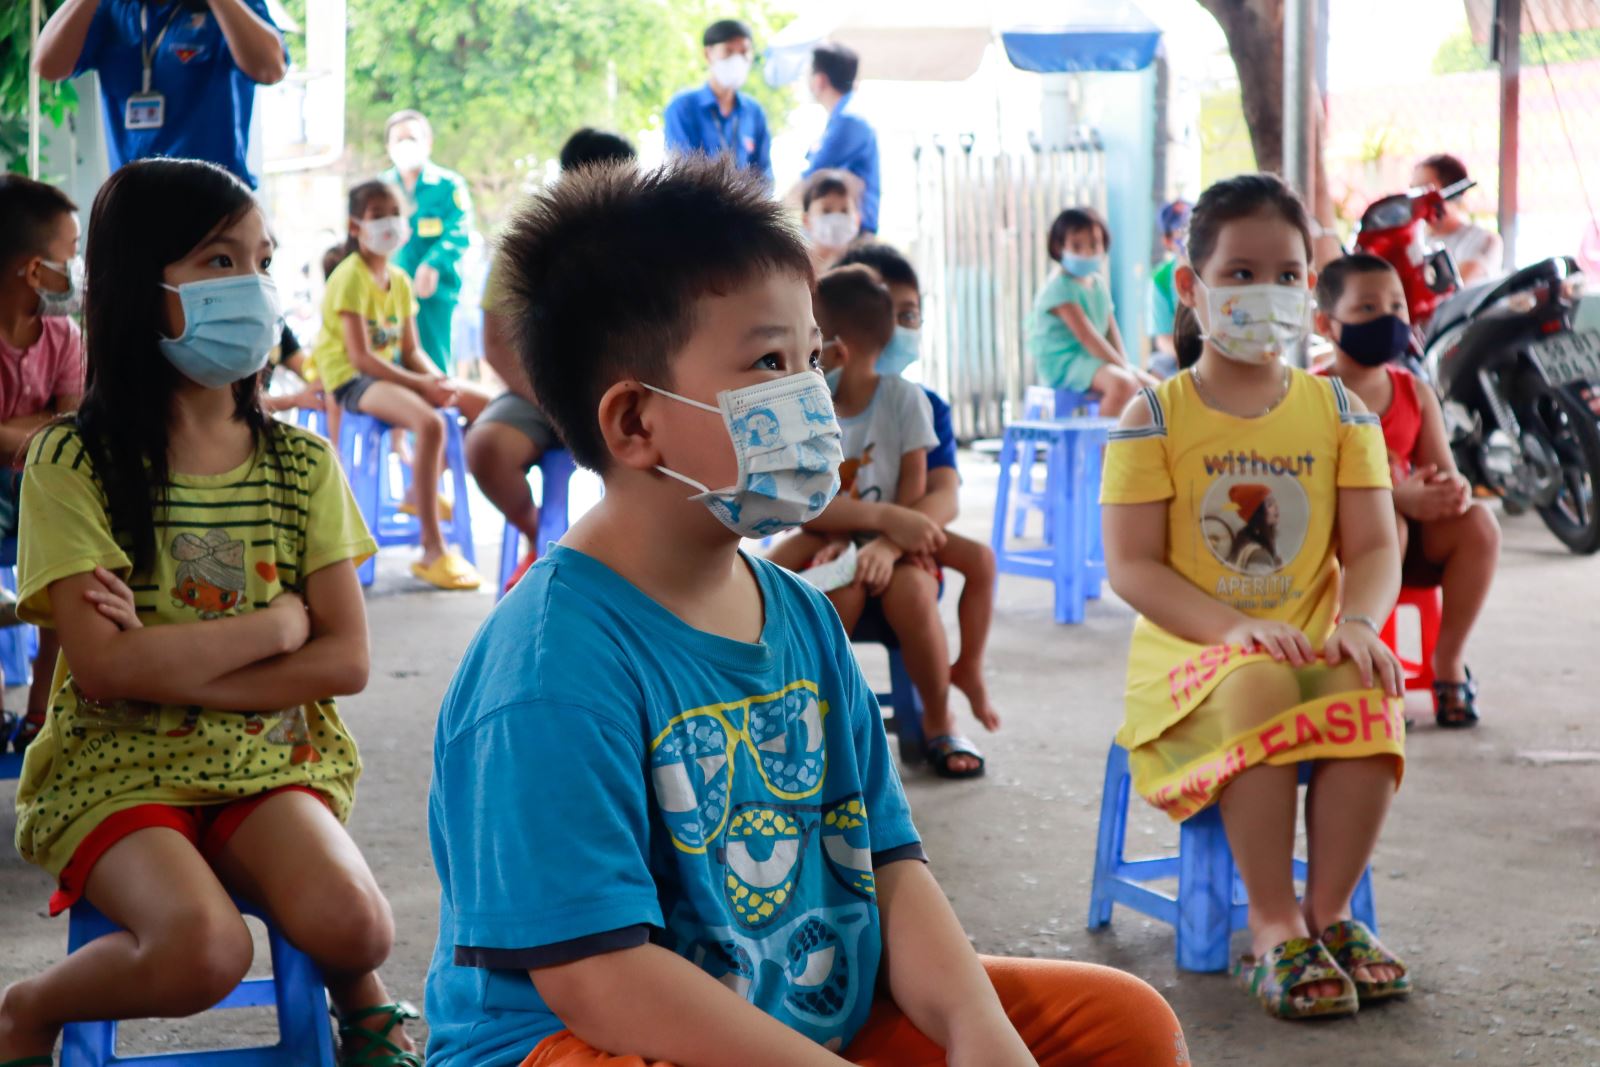 TP Hồ Chí Minh: Trung thu đủ bánh, đủ đèn, đủ trò chơi cho các bé trong mùa dịch COVID-19